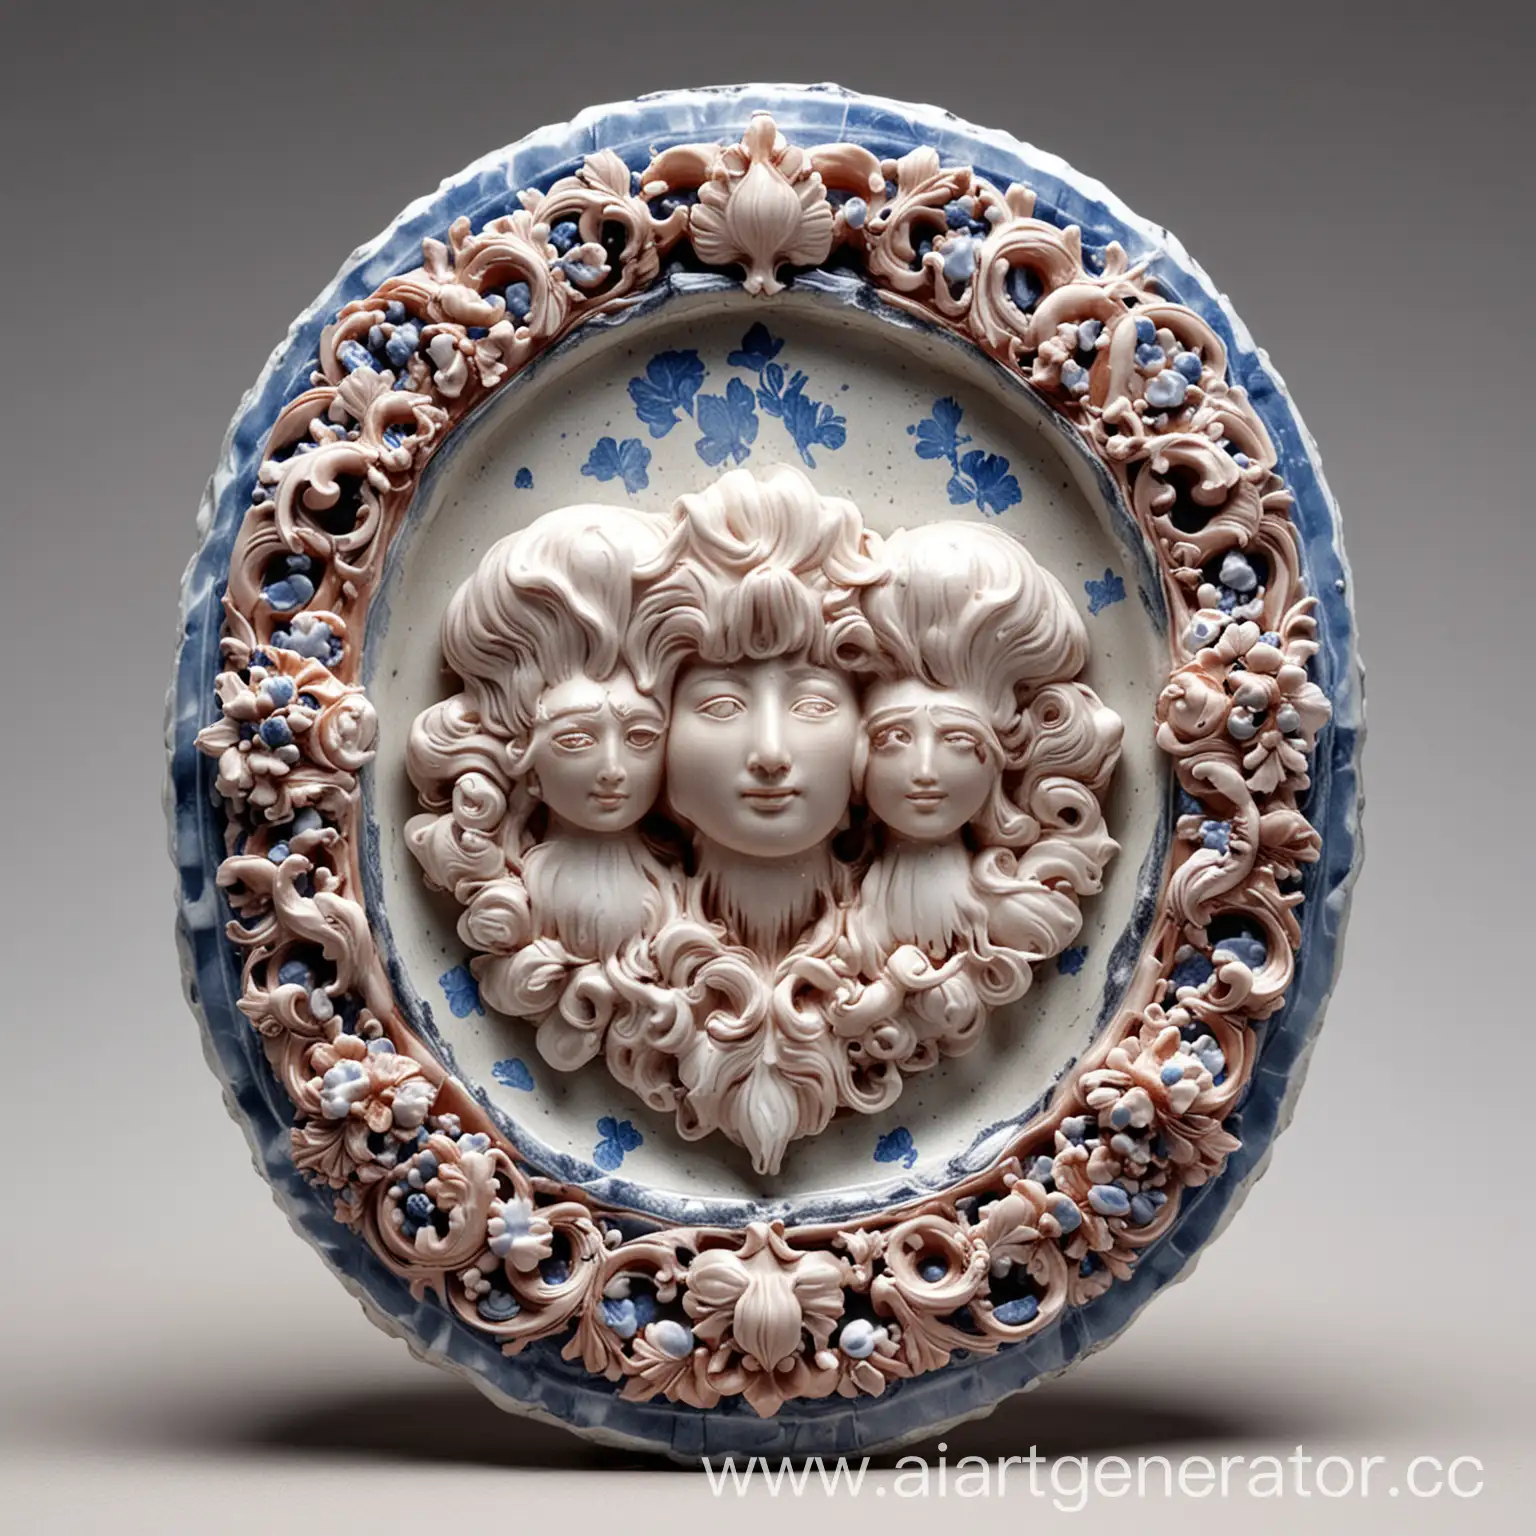 Traditional-Gzhel-Ceramic-Art-Crafted-with-Clay-Quartz-and-Calcium-Carbonate